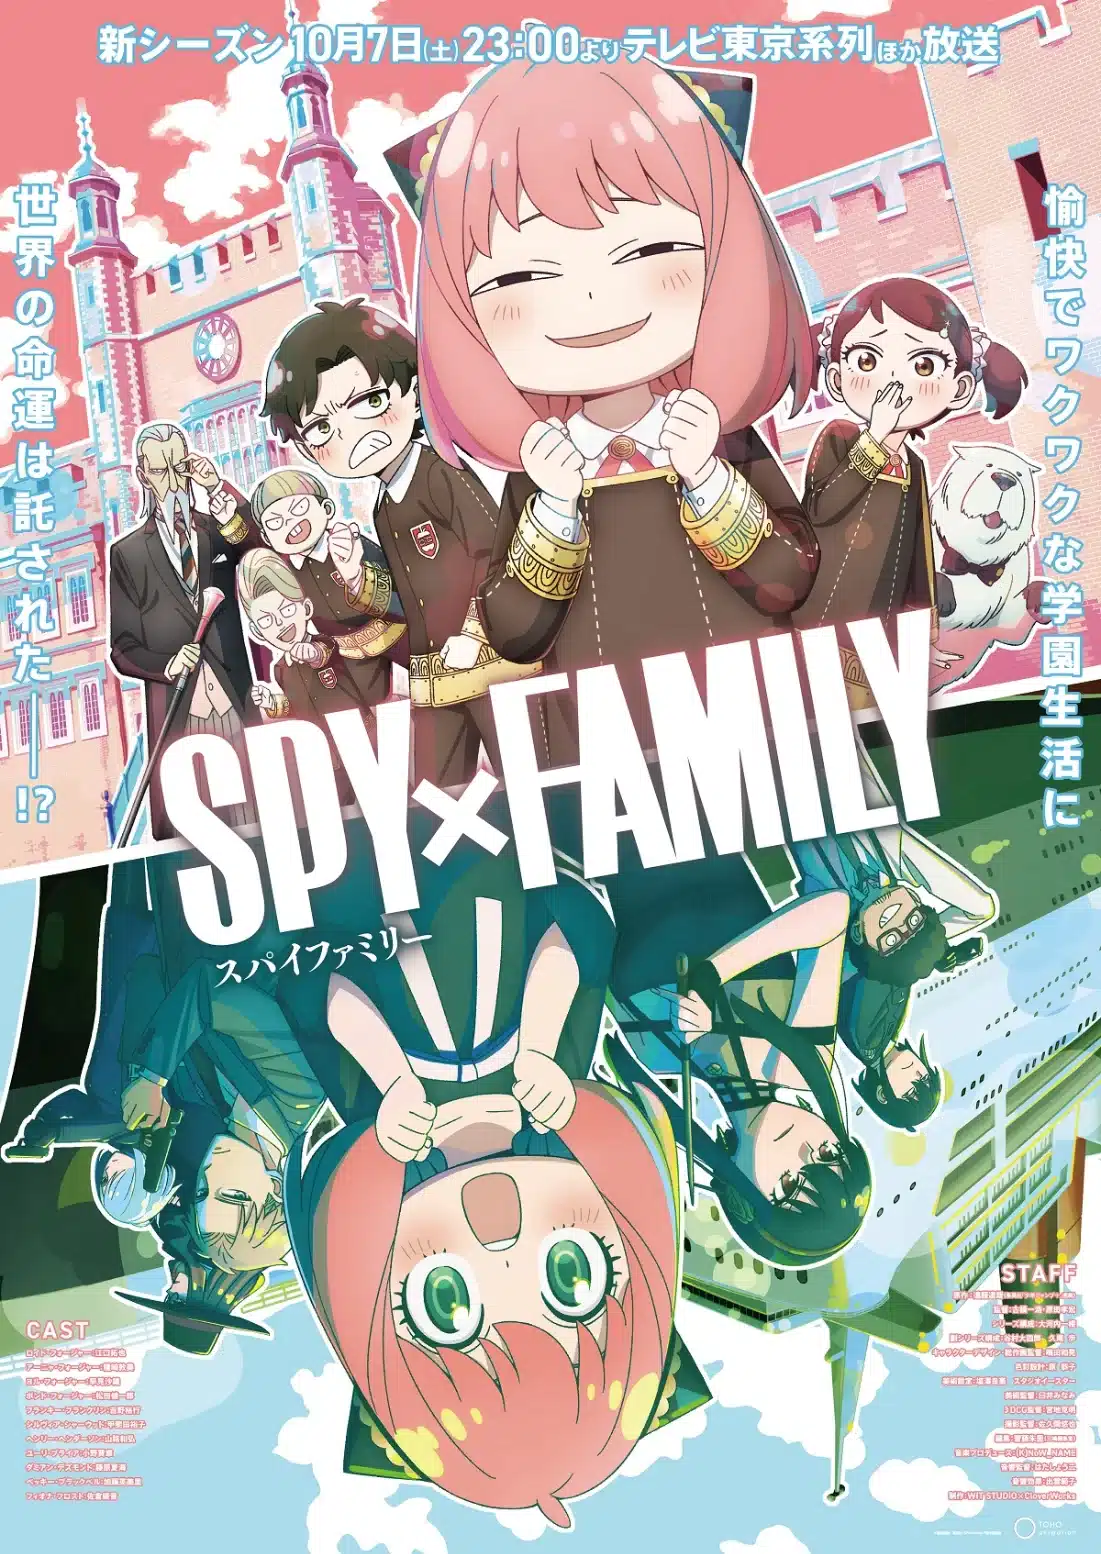 Spy x Family Regresa con su Segunda Temporada